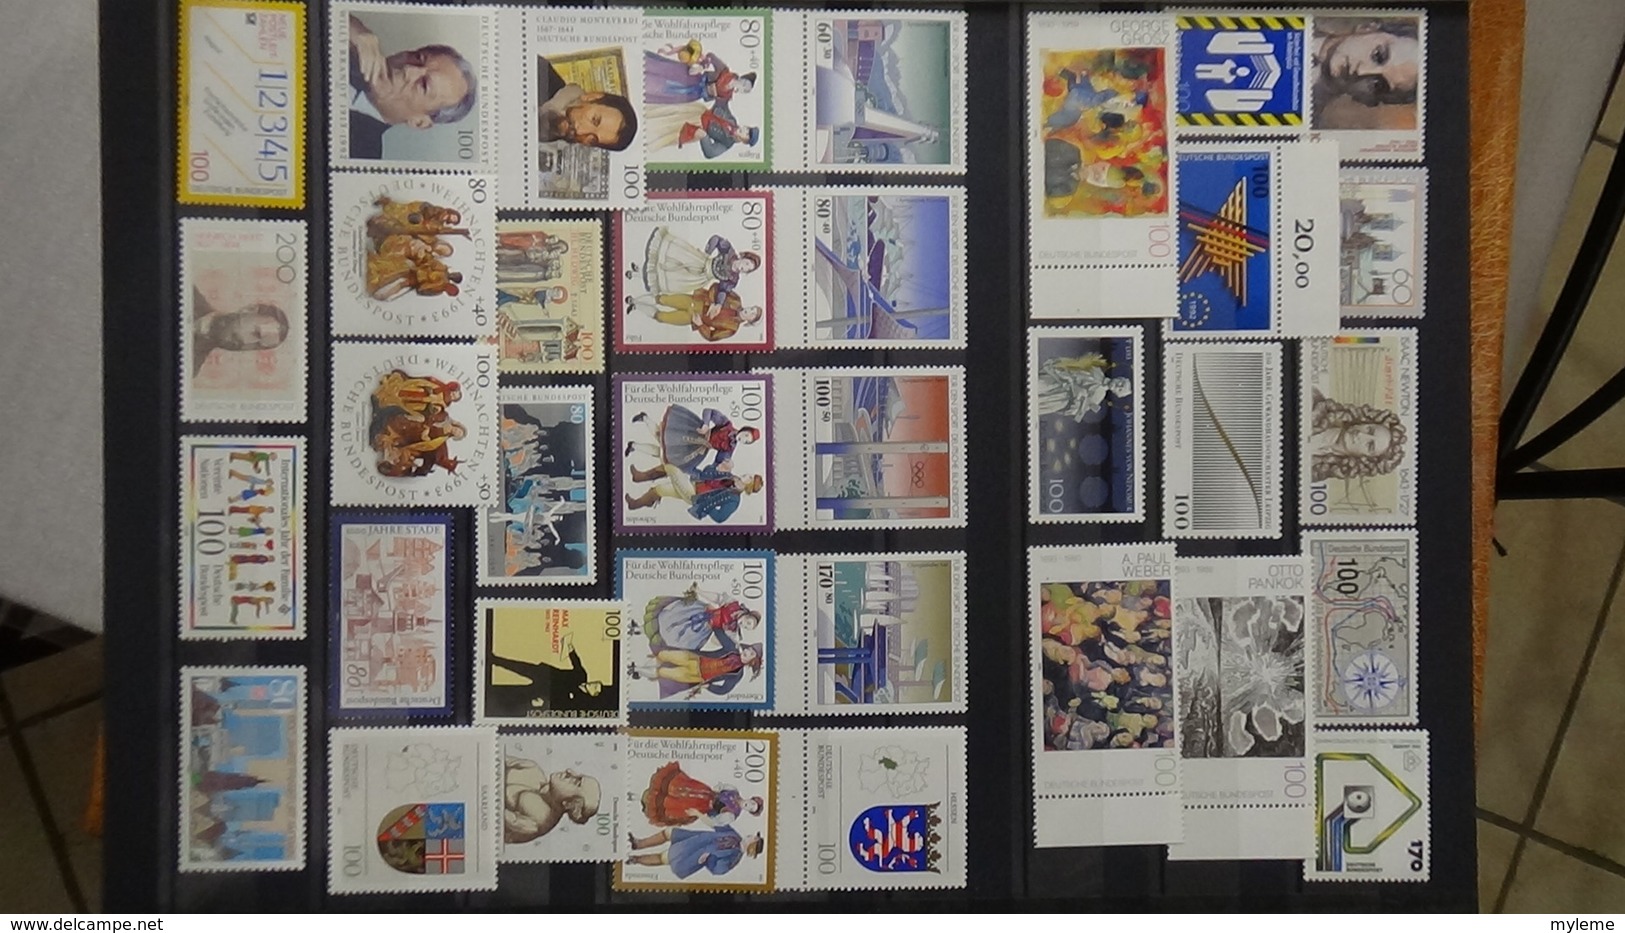 B461 Belle collection de timbres et blocs ** d'Allemagne Fédérale et de Berlin. A saisir !!!